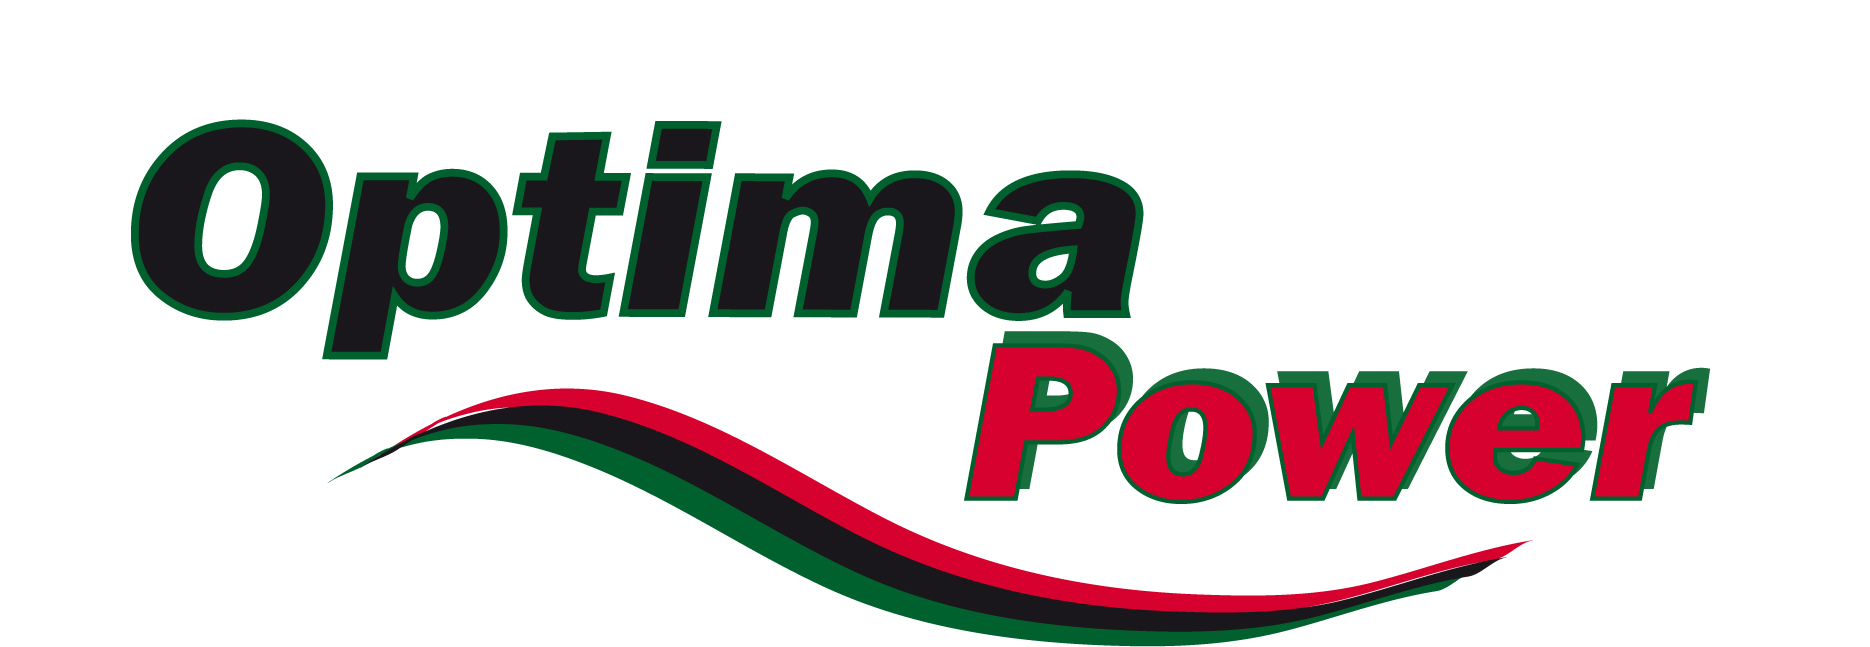 Optima-Power-landscape-logo-white-backound